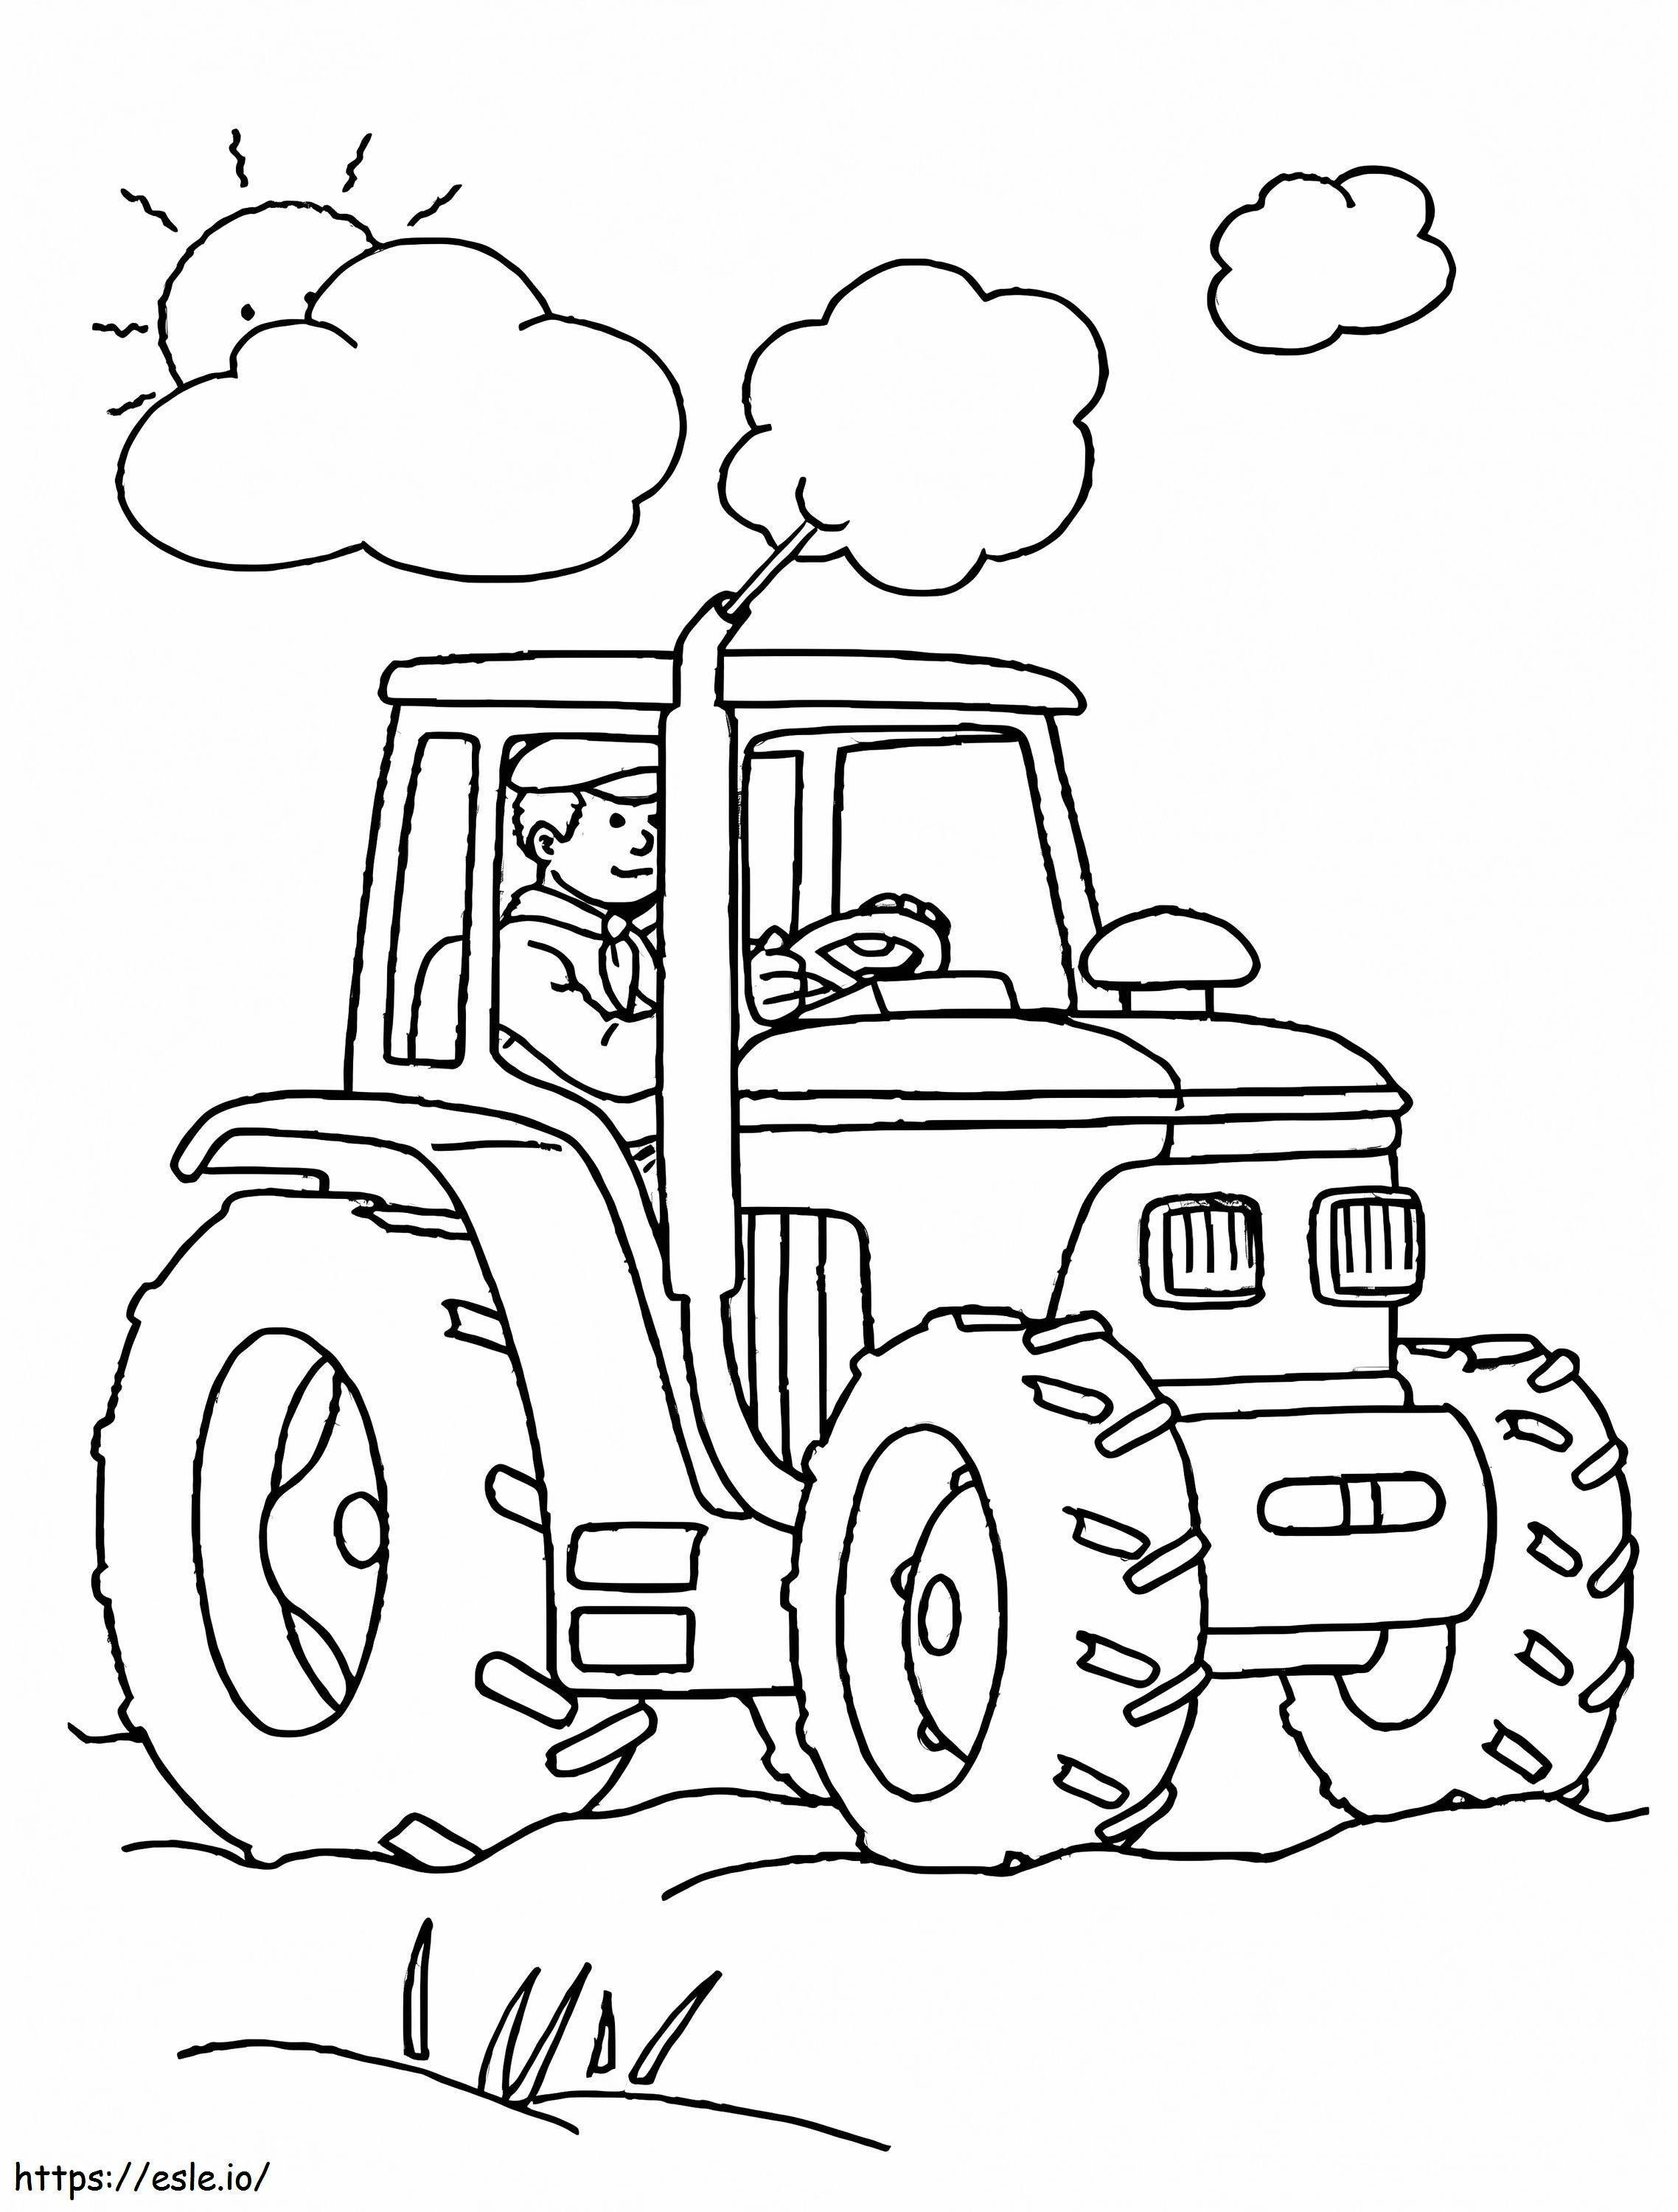 Coloriage Agriculteur et tracteur 777X1024 à imprimer dessin